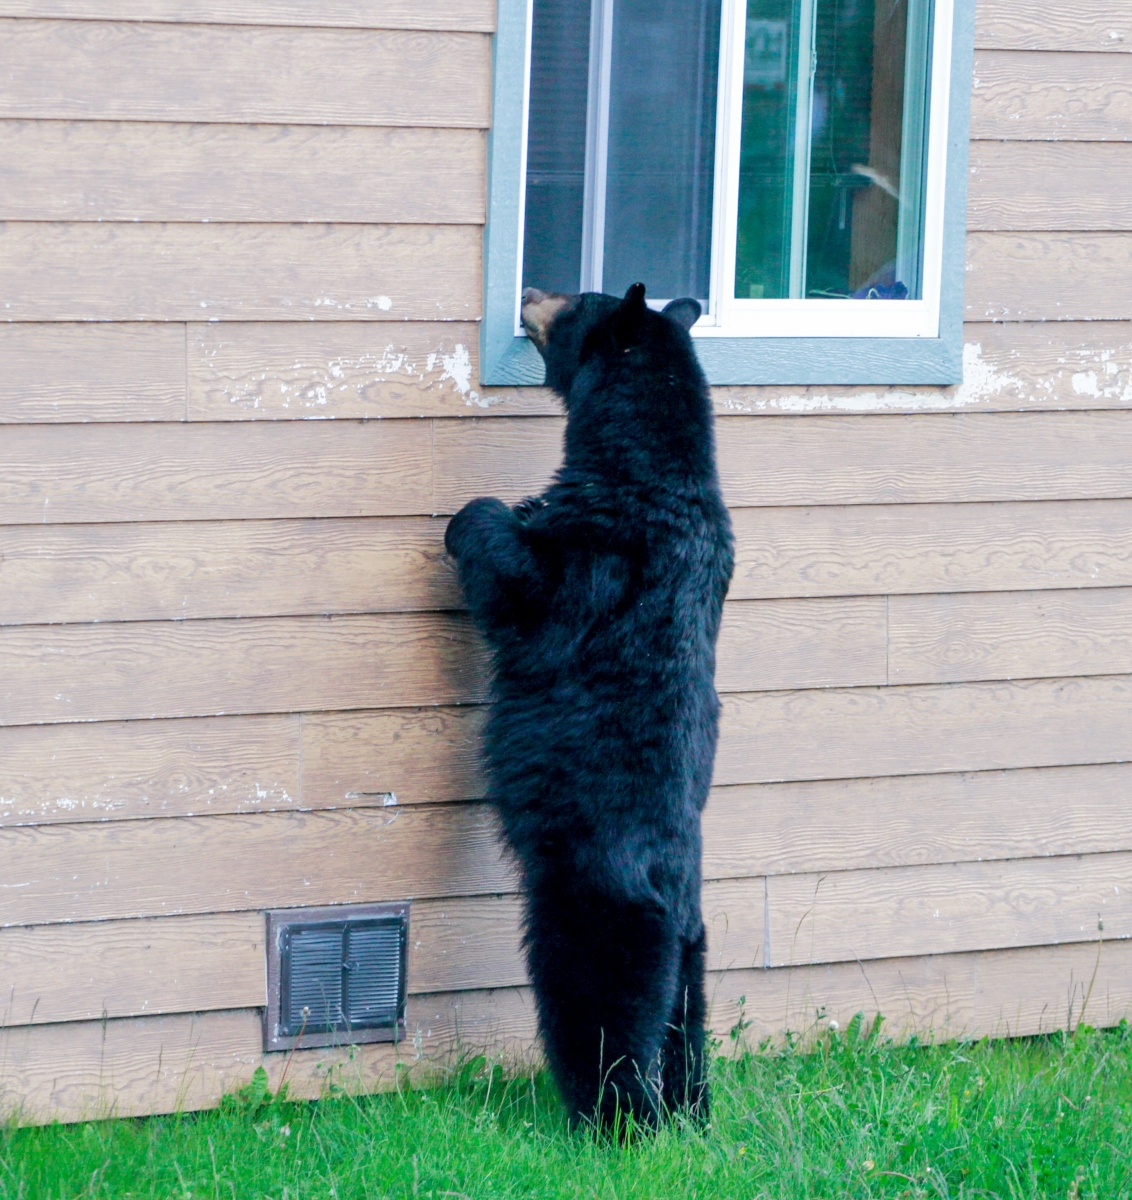 Bear-Peeking-In-Window (1).jpg